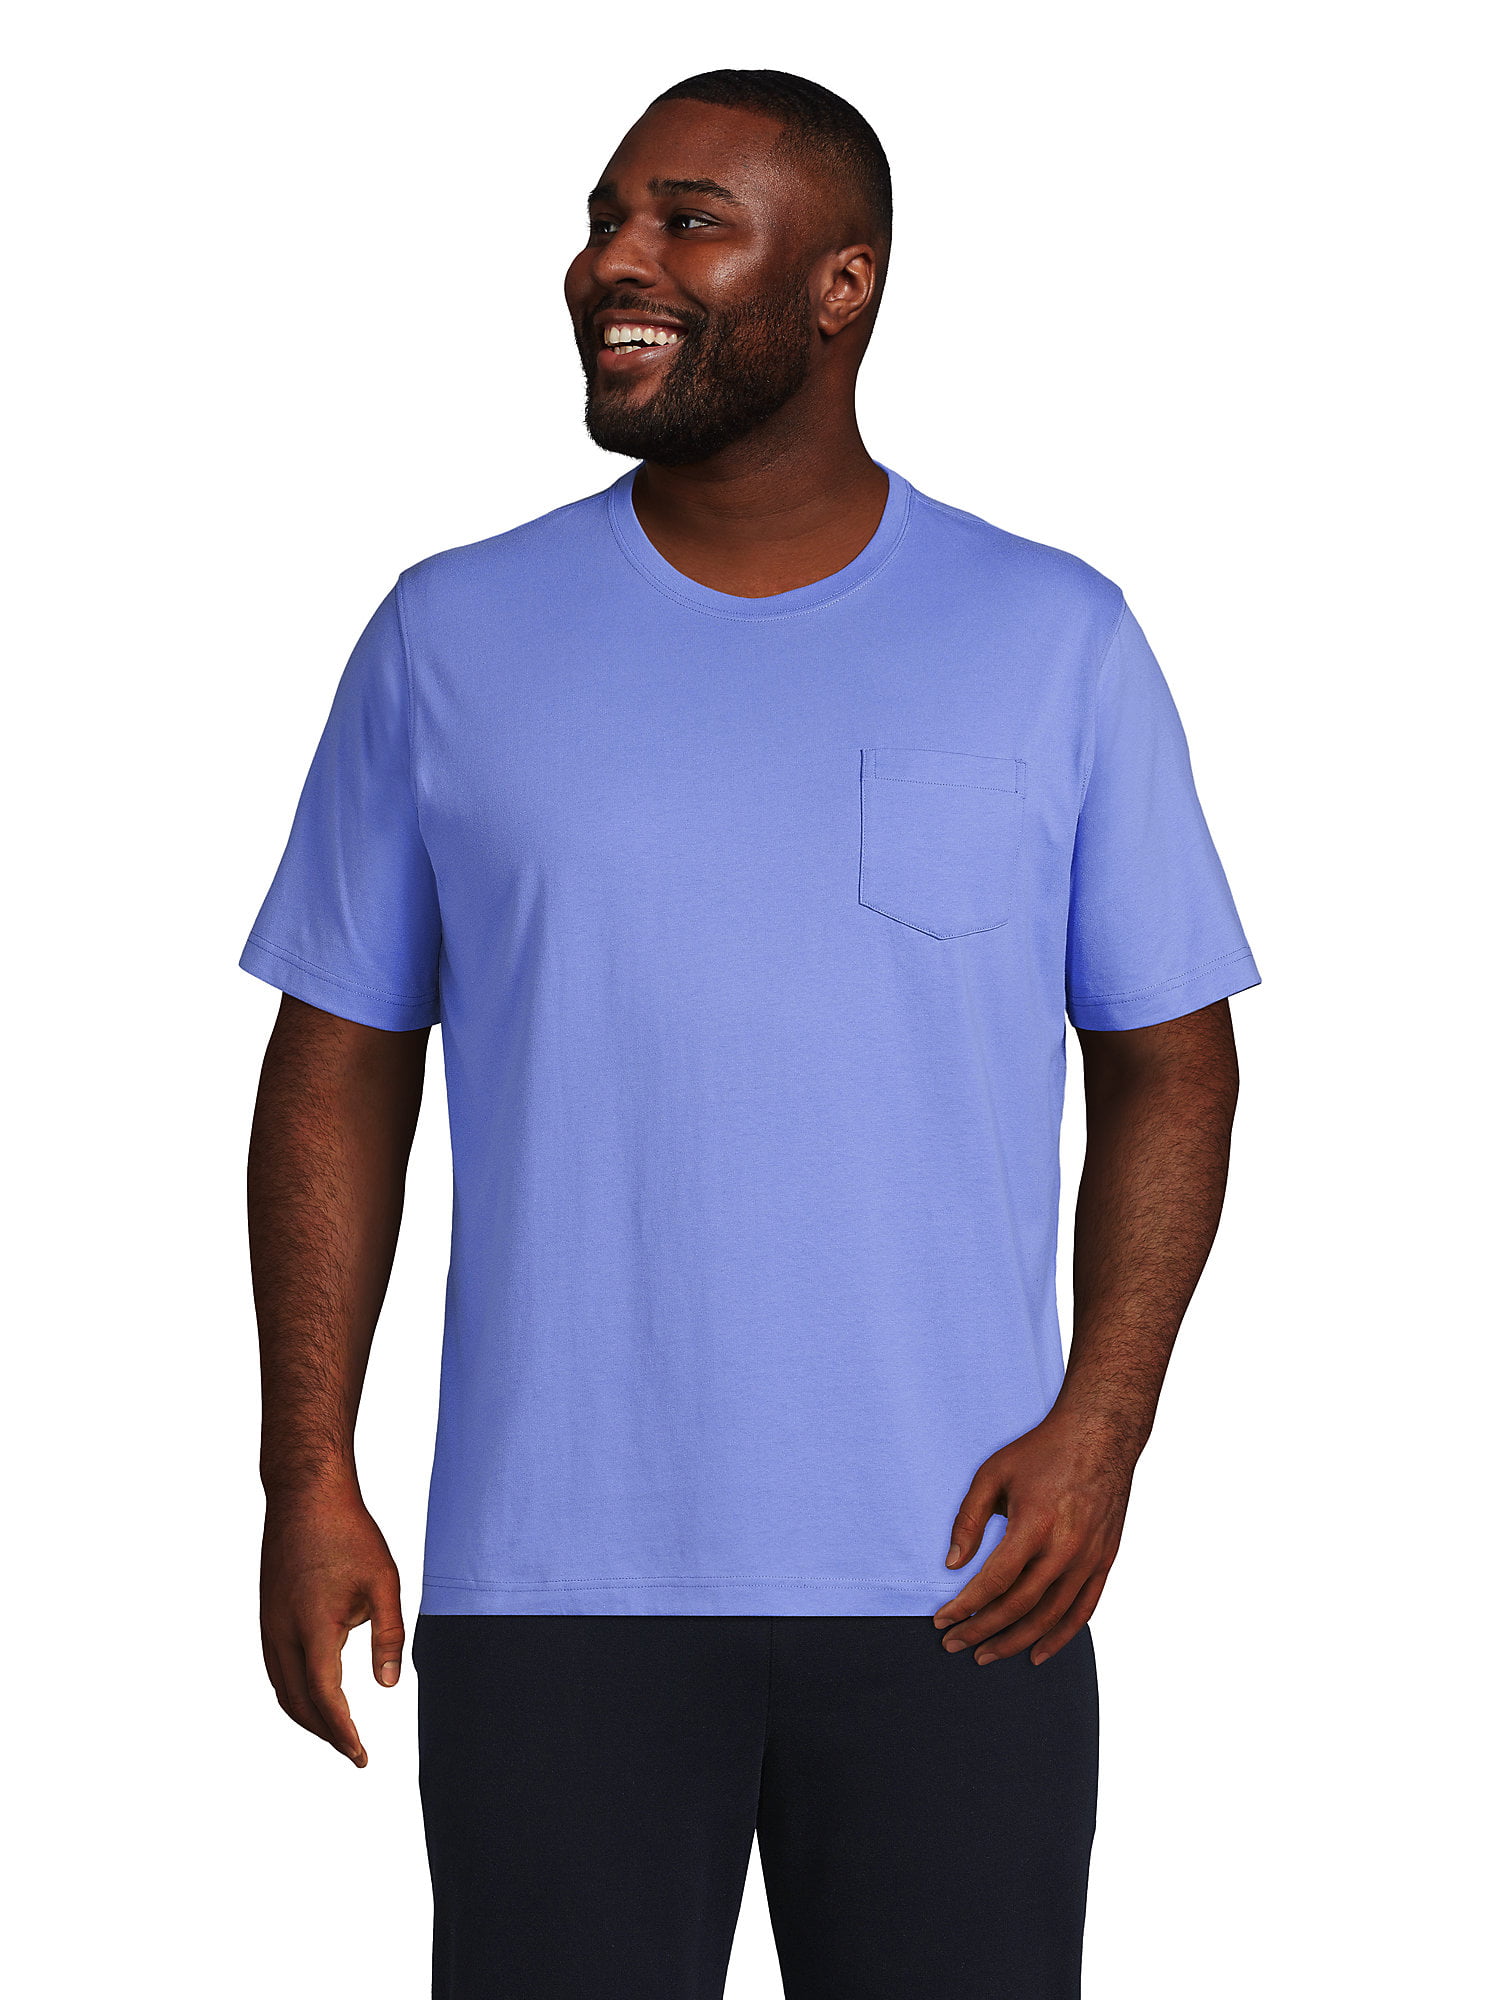 Lands' End Men's Big Super-T Short Sleeve T-Shirt with Pocket